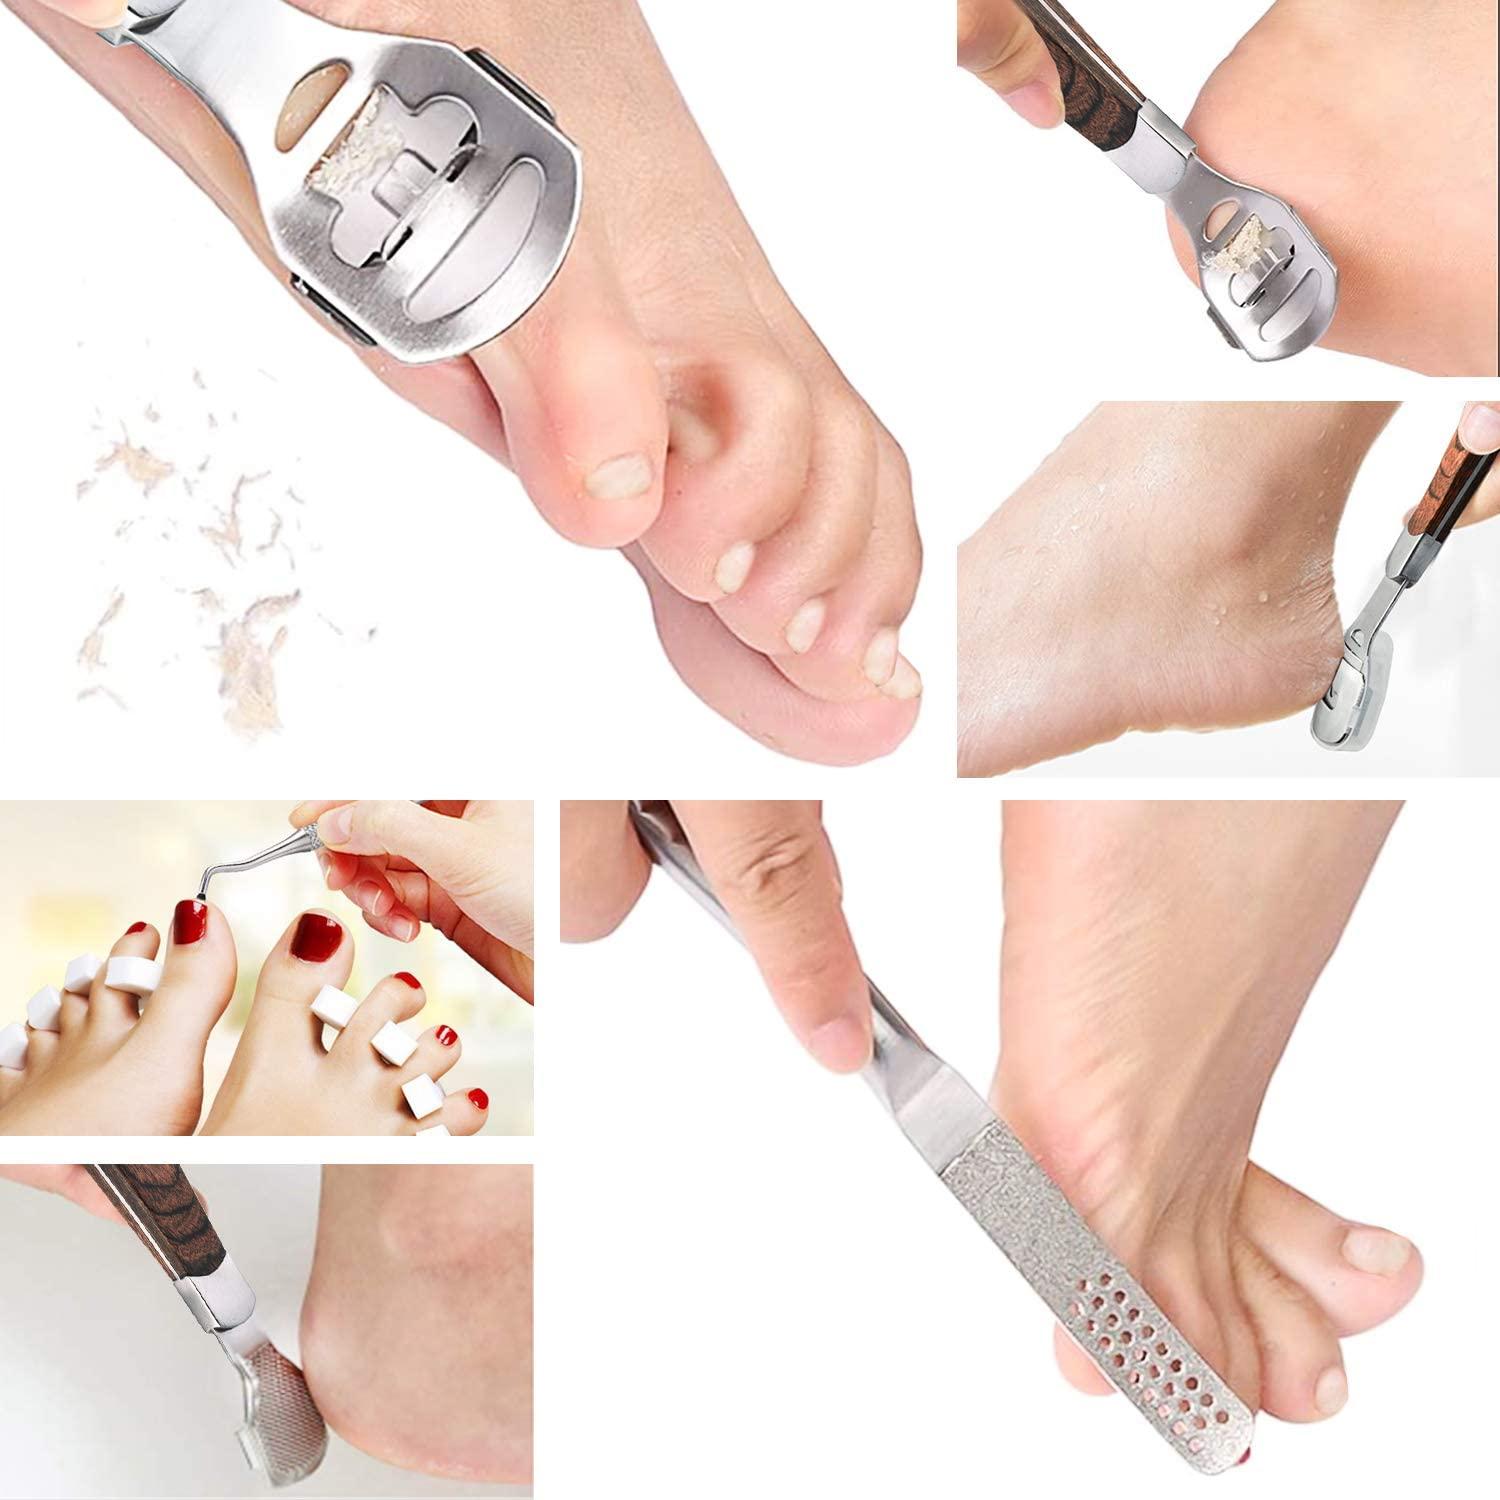 Foot Care Pedicure Callus Shaver, Dead Hard Skin Remover, Scraper For Hand  Feet Heel Care